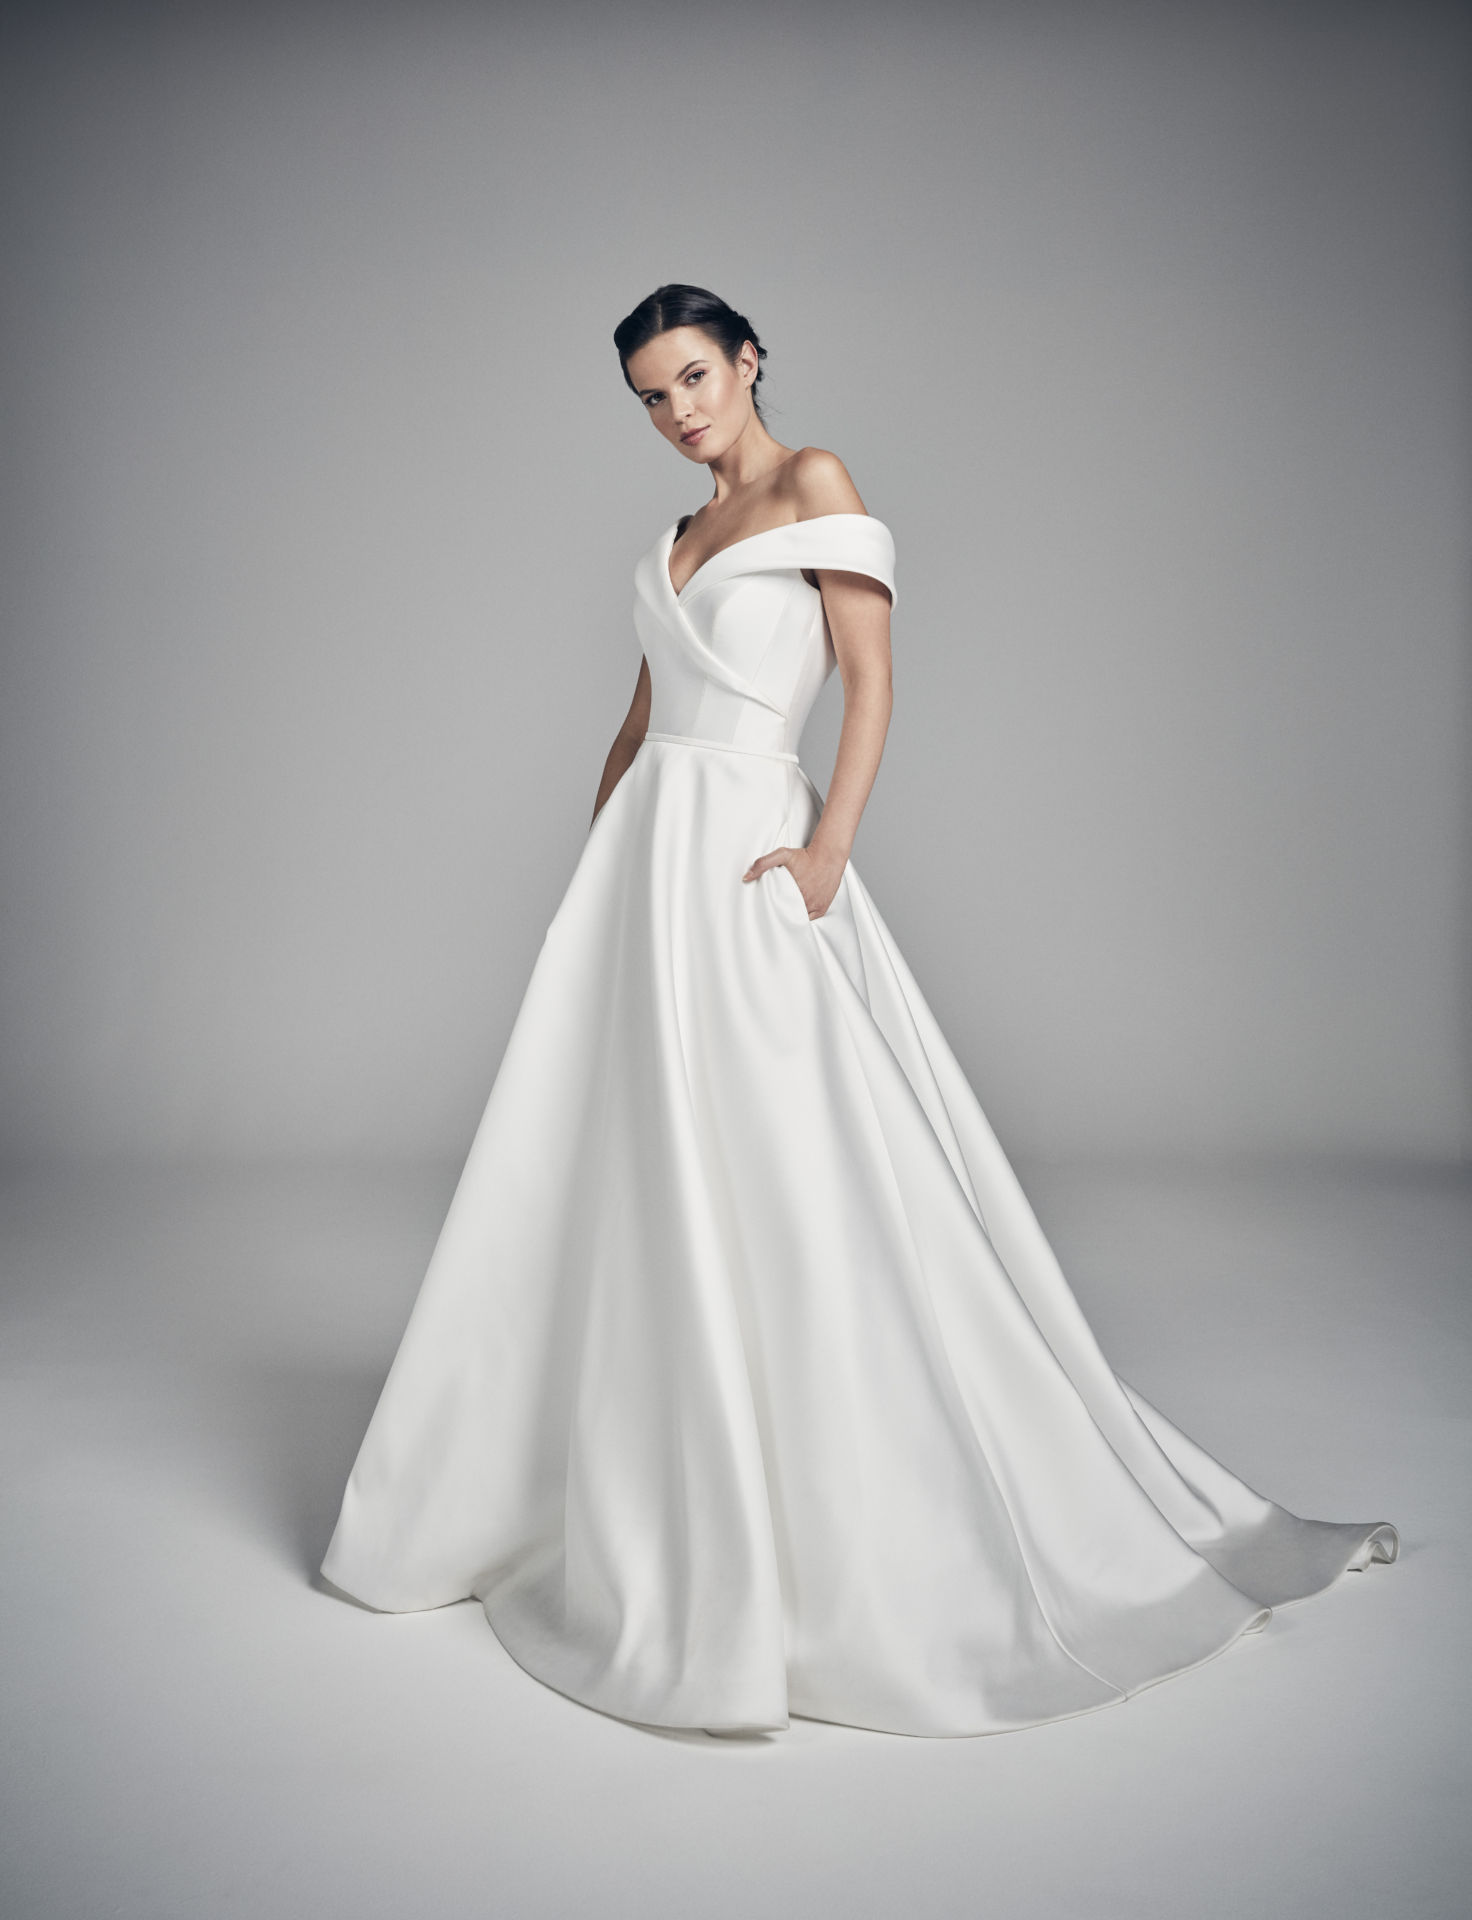 SAPPHIRE | SUZANNE NEVILLE | granmanie | wedding dress